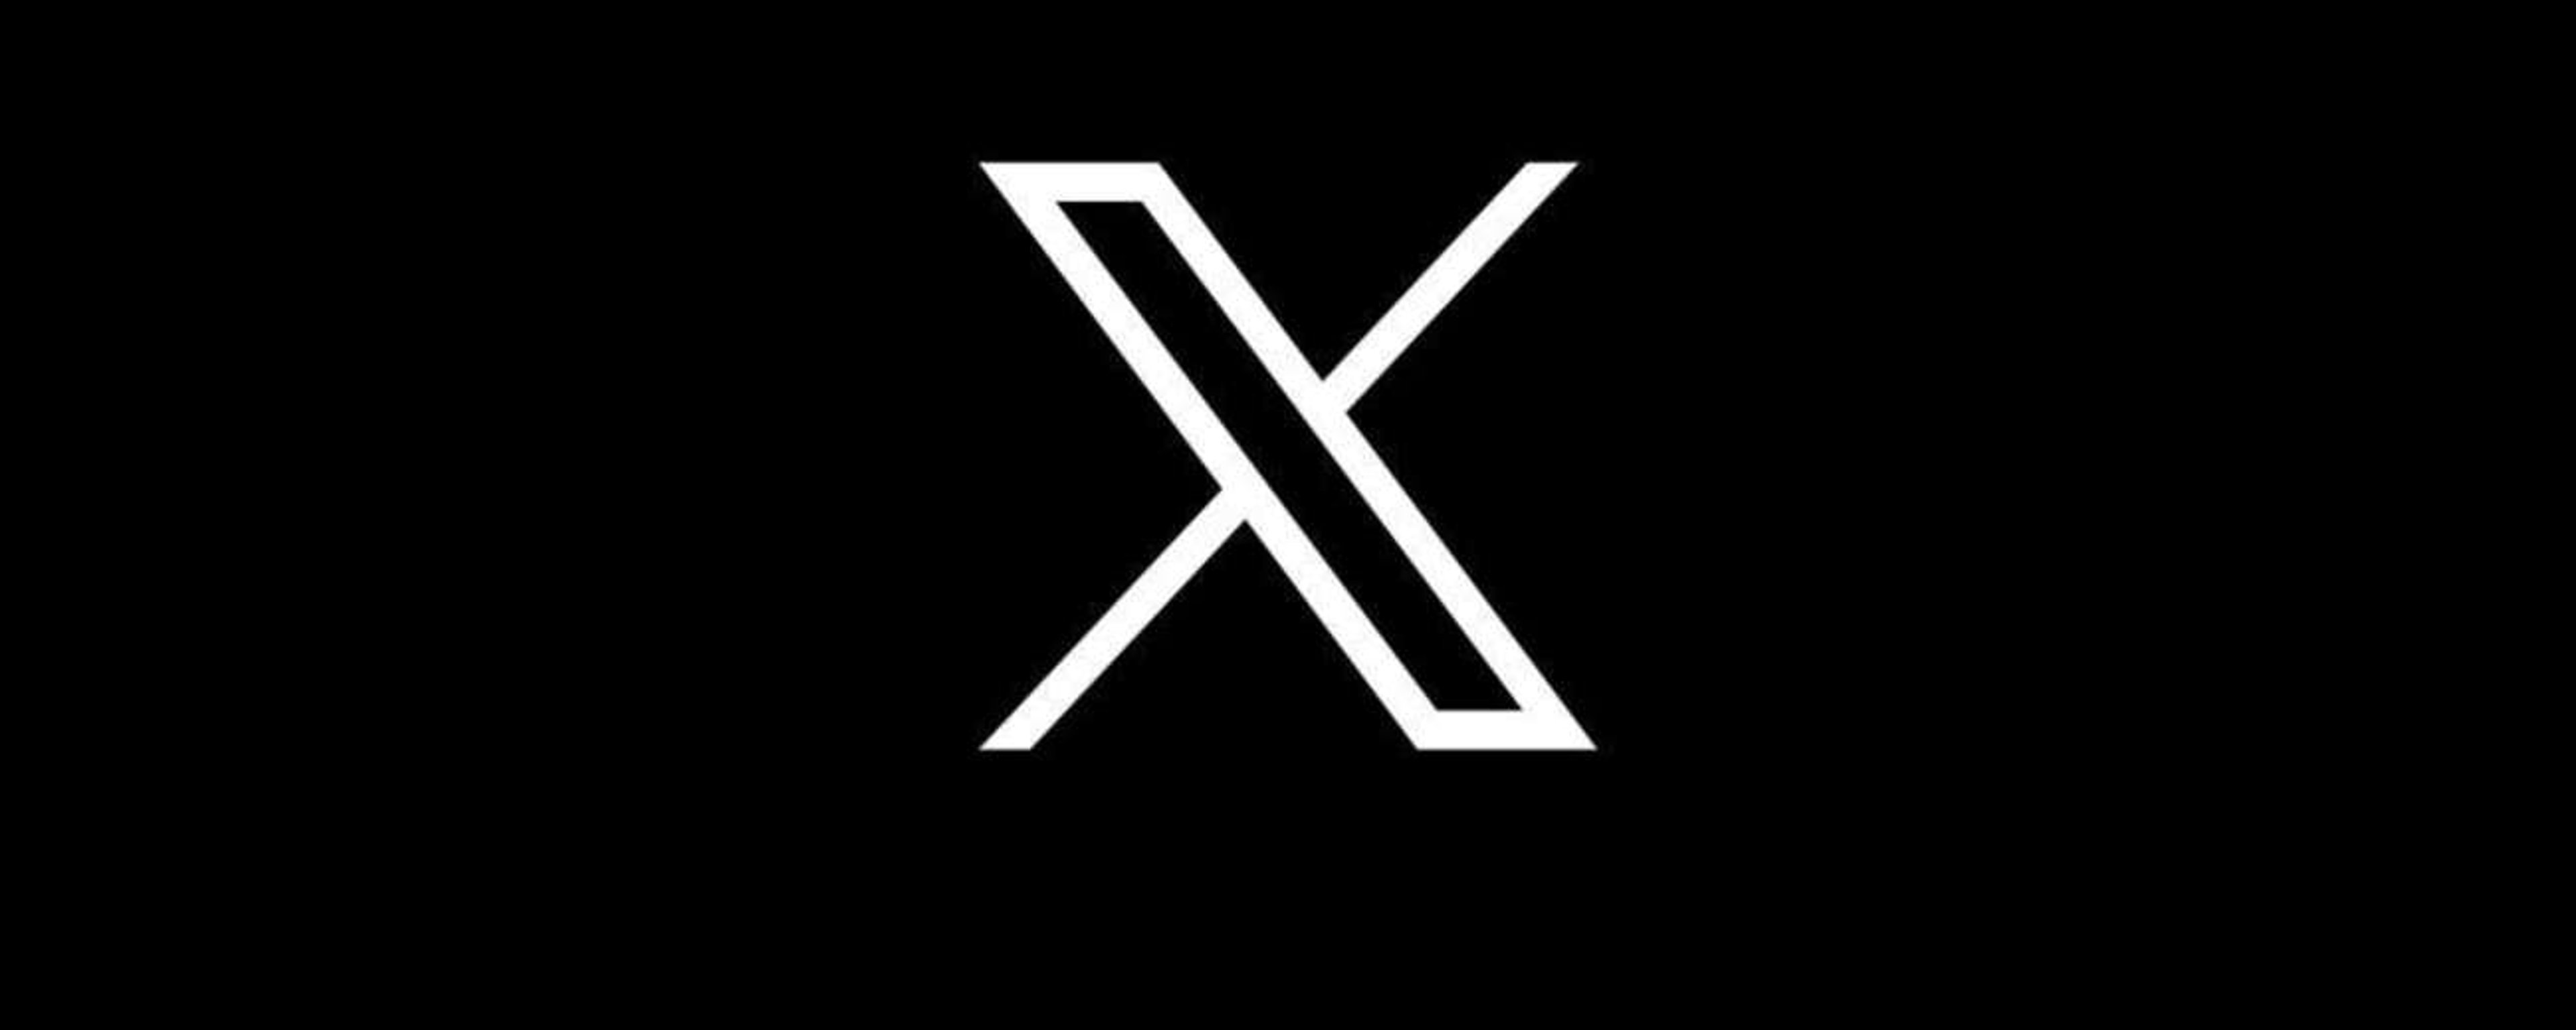 Twitter è “morto”: X è ora disponibile su iOS